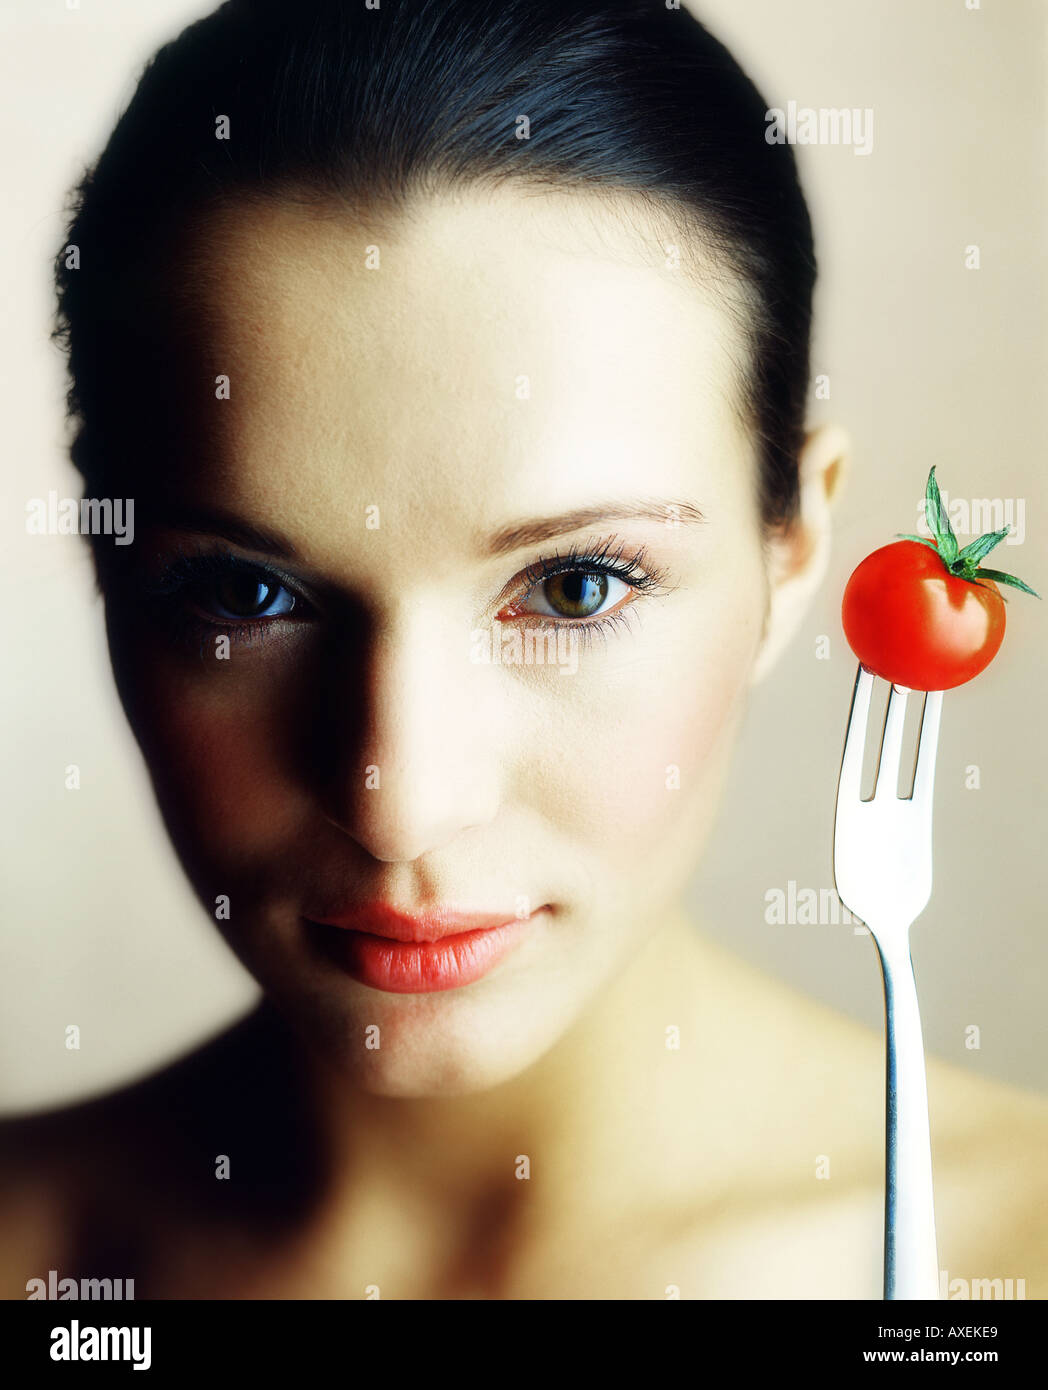 Femme fille mloda 1520 faire face jusqu'à la fourche de légumes tomate brune stick collé joyeuse joyeuse vegetar régime vitamines studio Banque D'Images